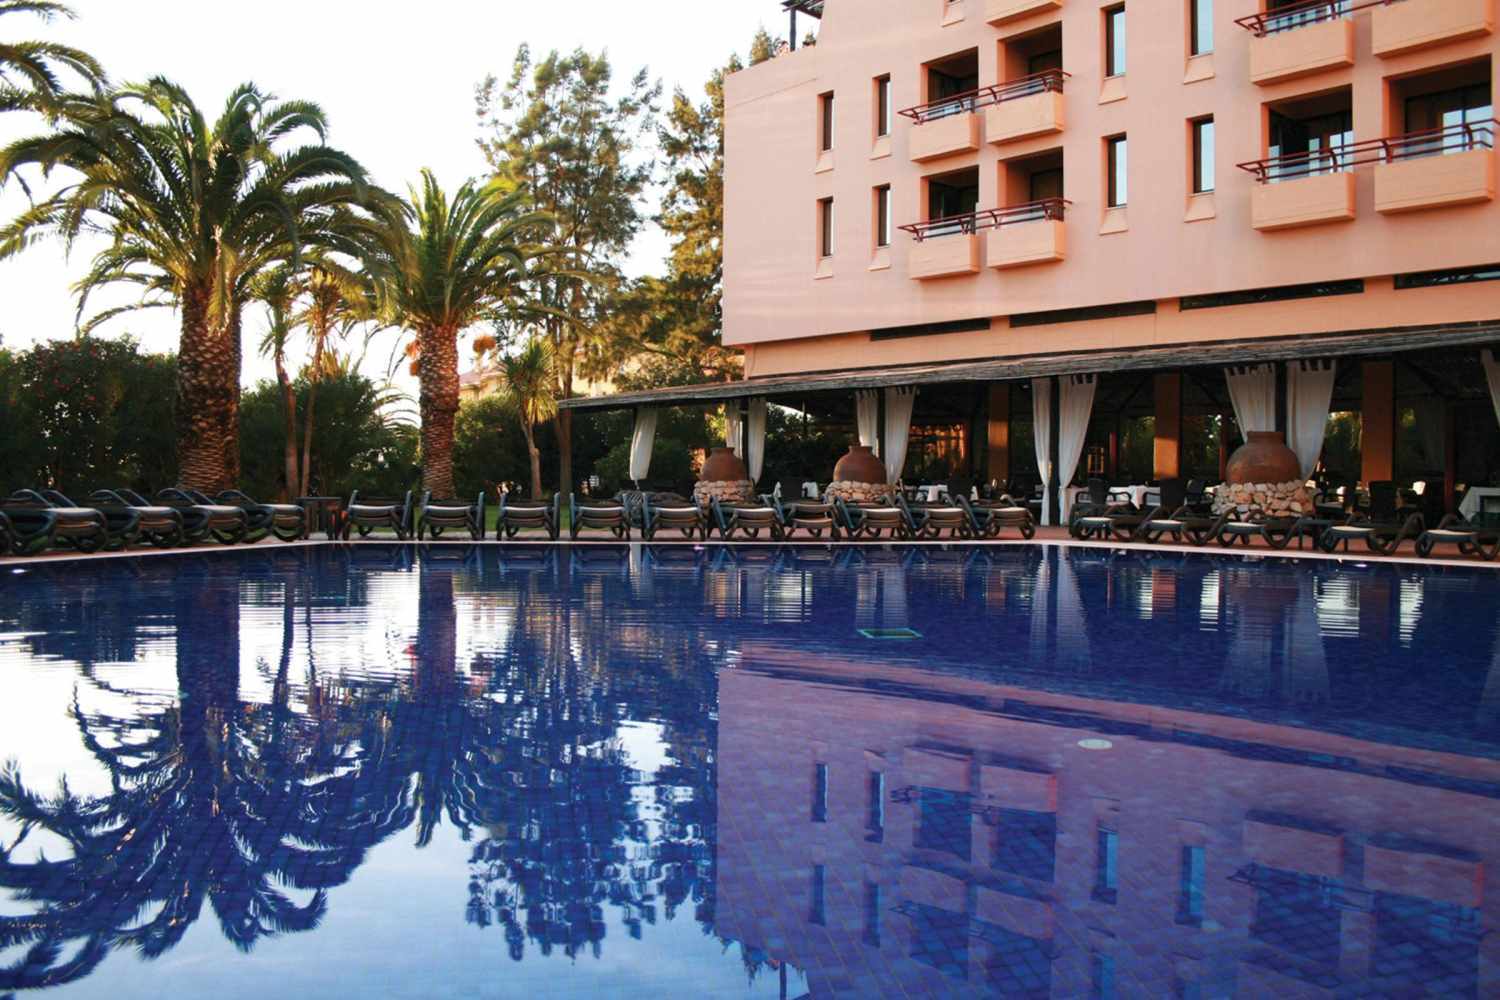 Dom Pedro Marina Vilamoura Boutique Hotel & Golf, Quarteira, Algarve, Portugal